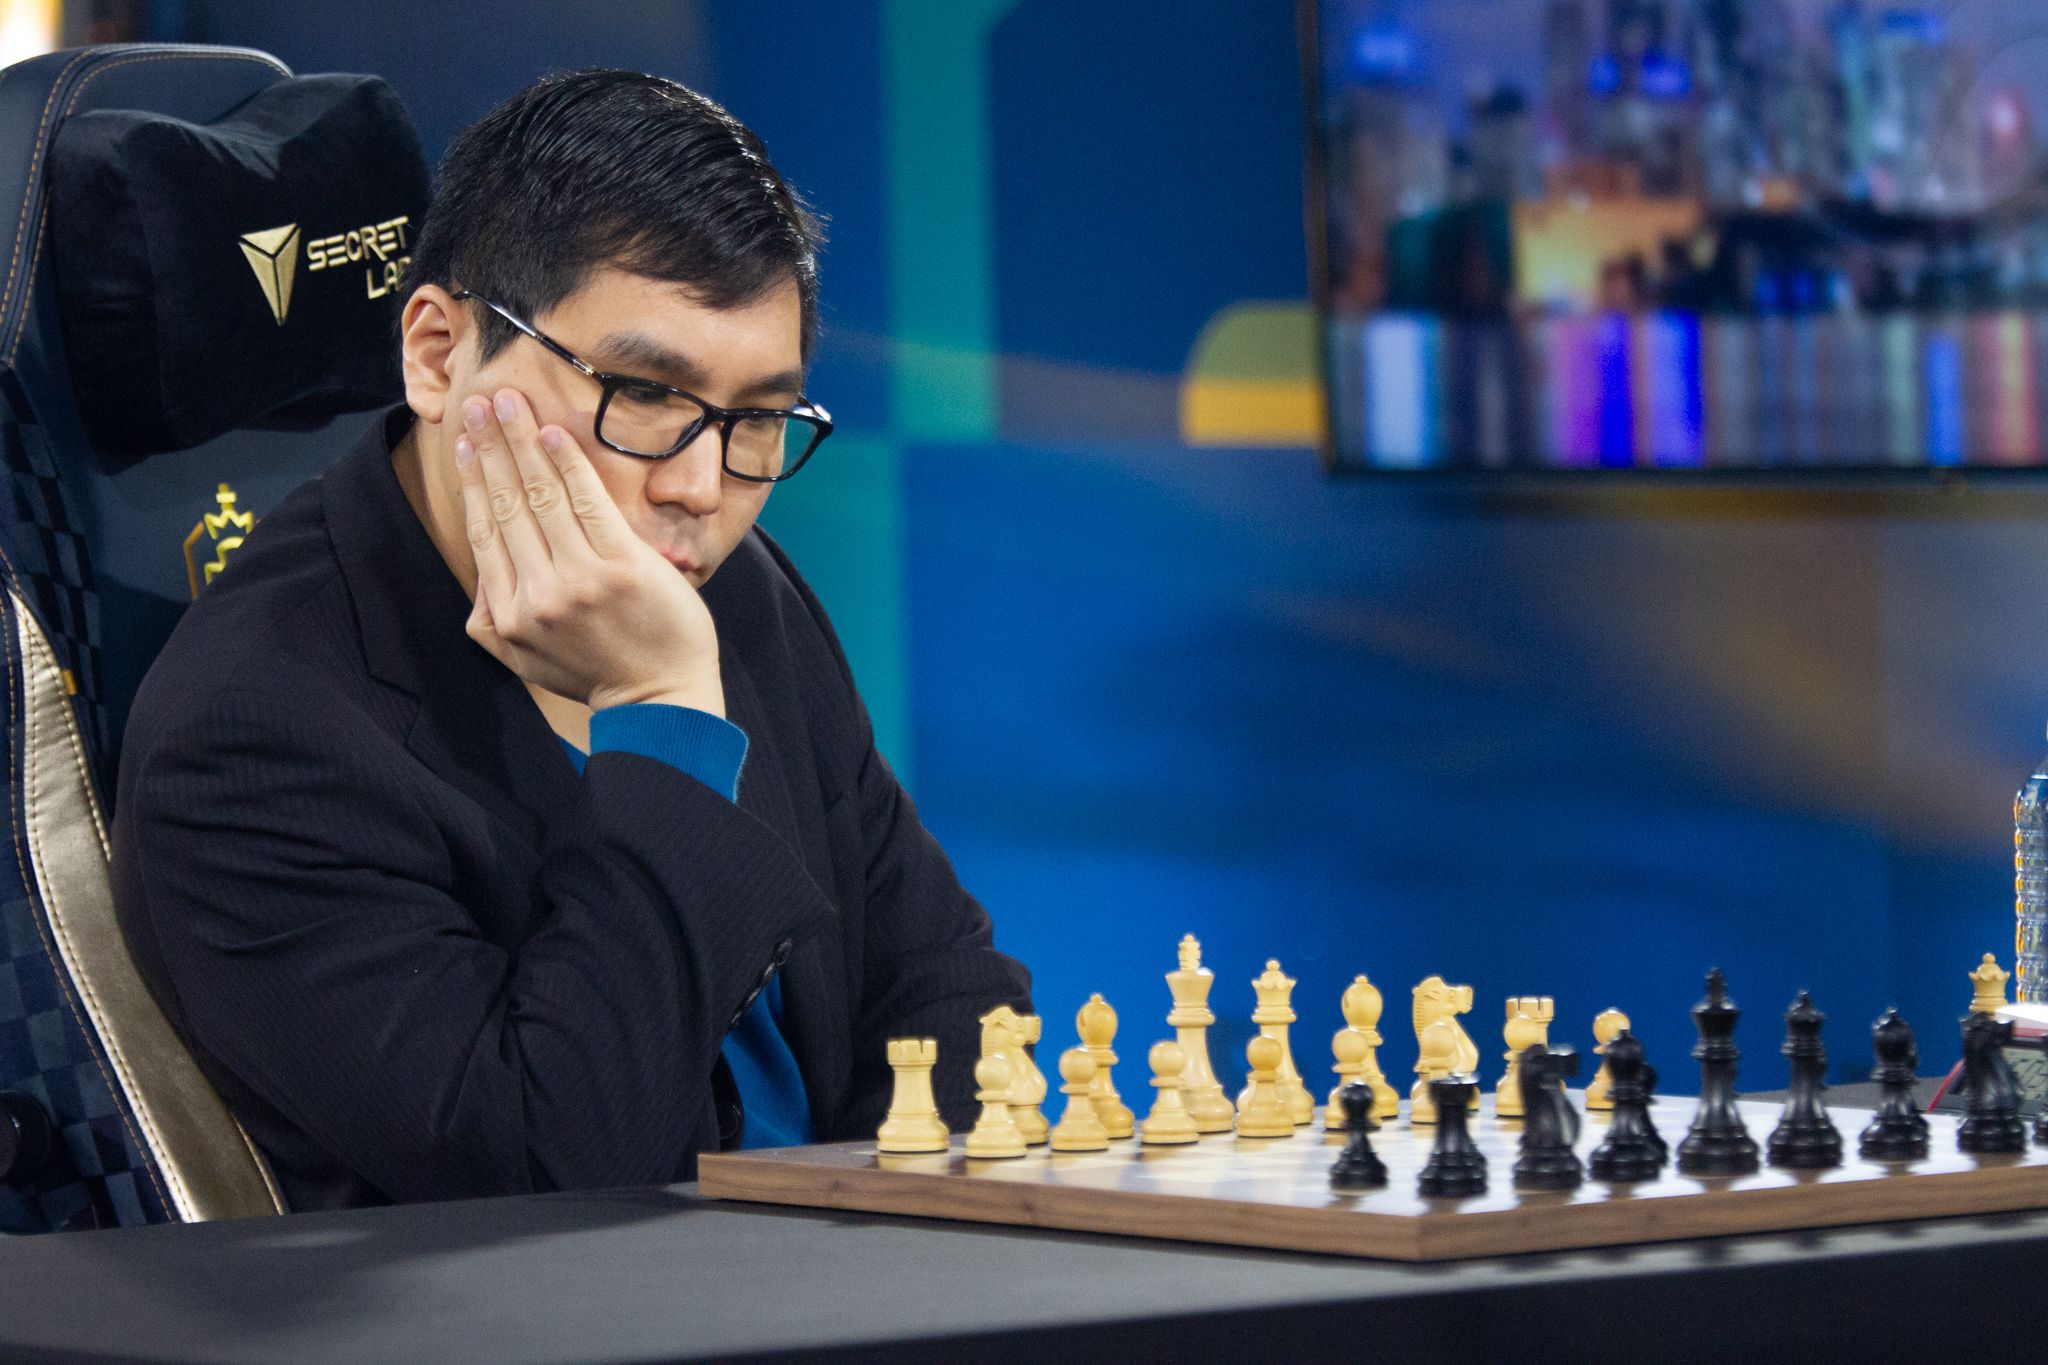 O Gambito do Rei: Magnus Carlsen lança Champions Chess Tour com